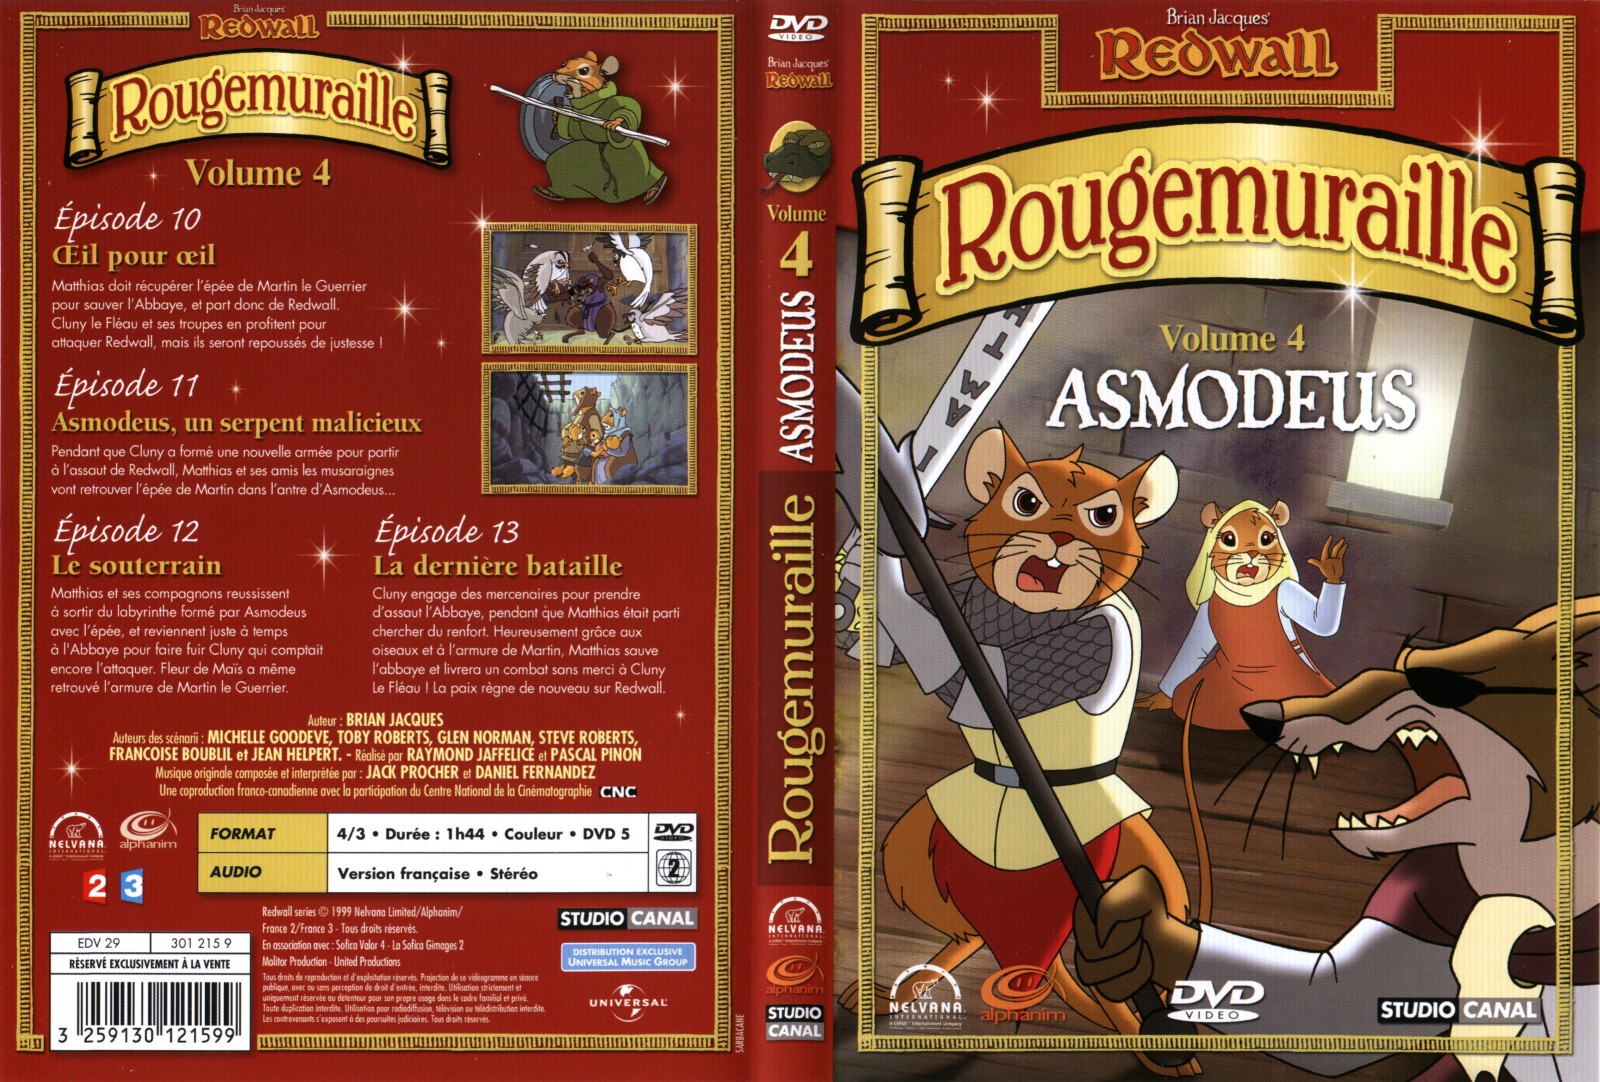 Jaquette DVD Rougemuraille vol 4